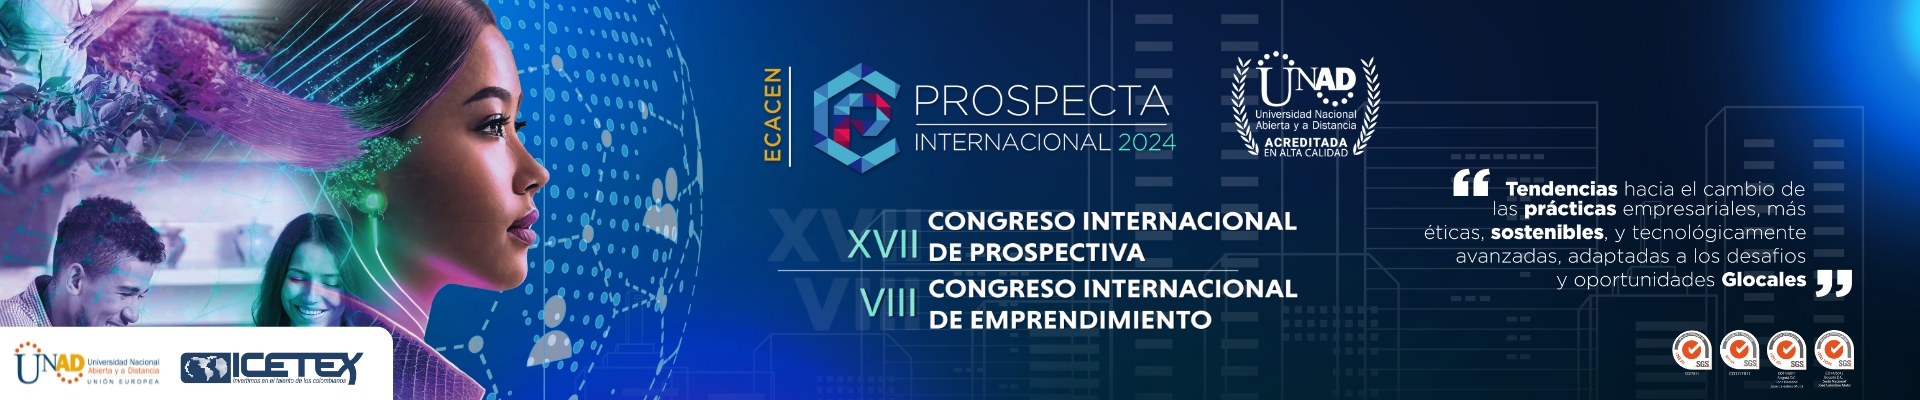 Congreso Prospecta Internacional 2024